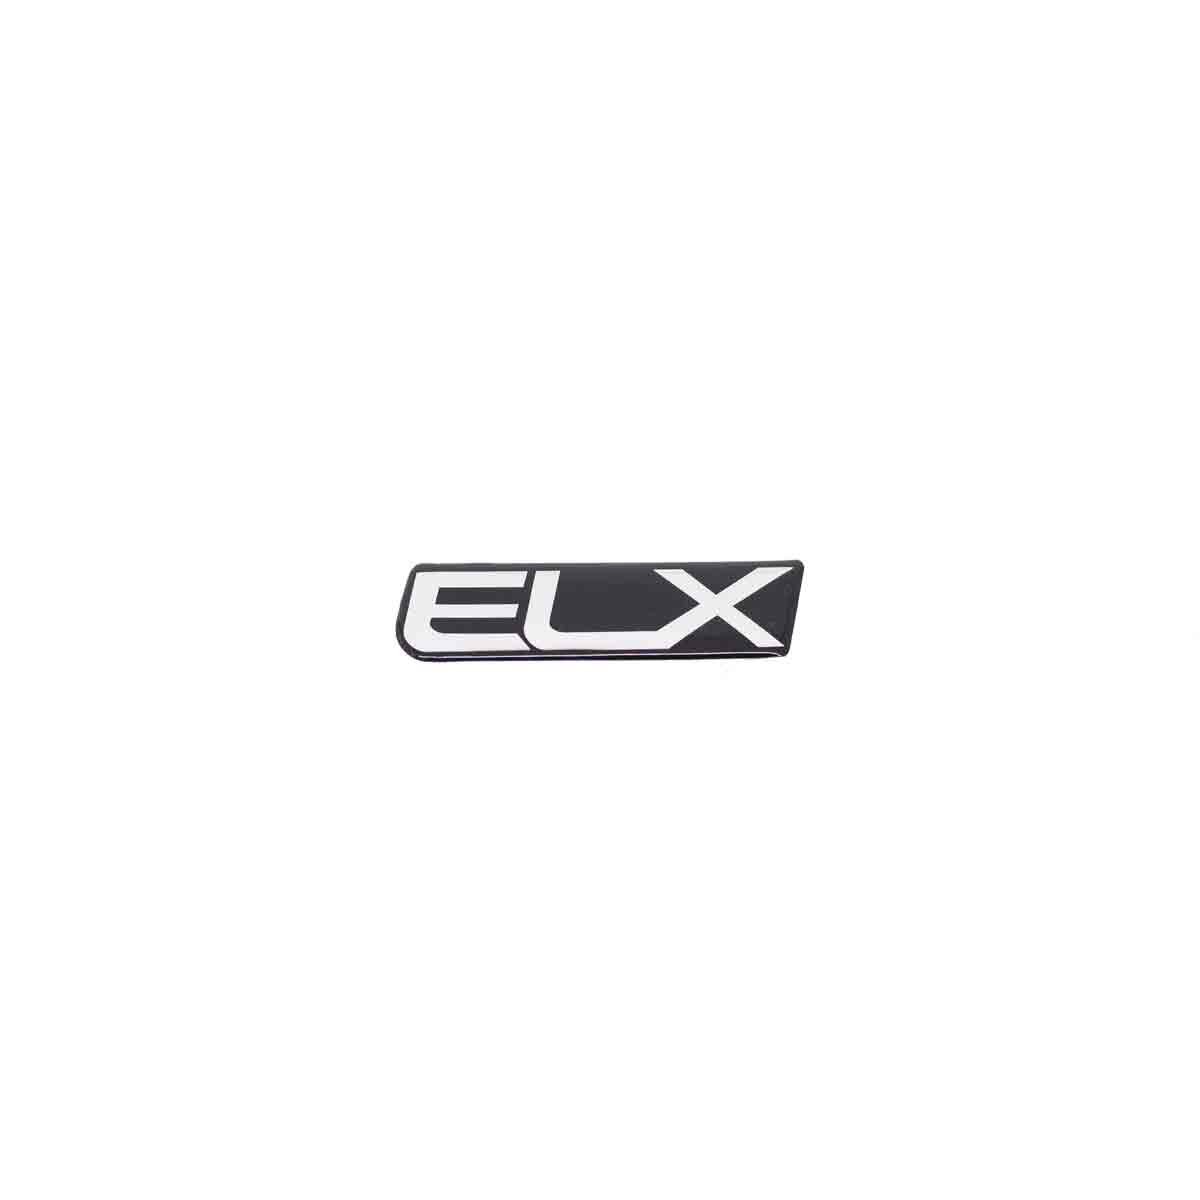 Emblema ELX (Resinado Uno)